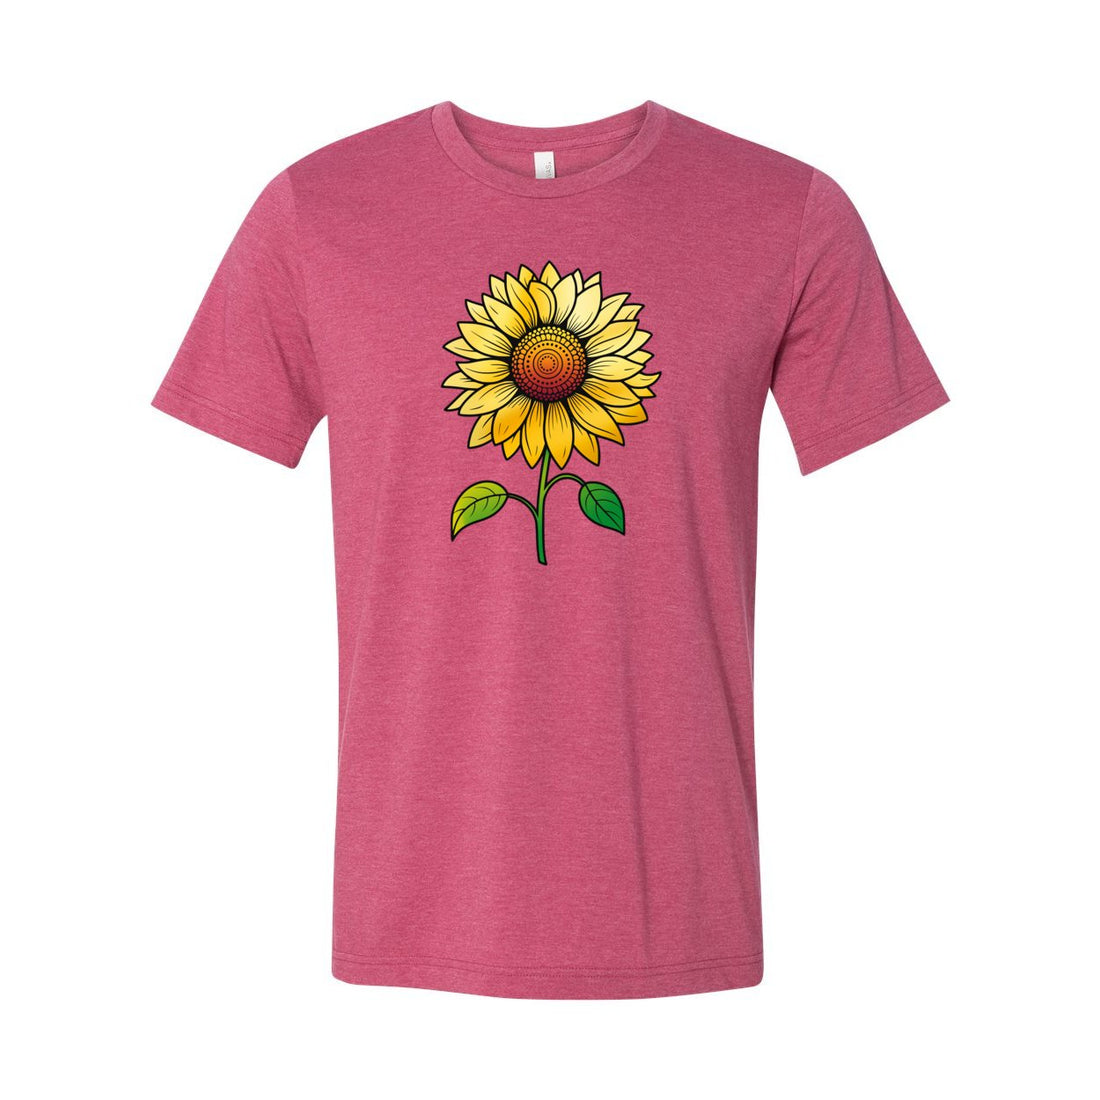 Sunflower Short Sleeve Jersey Tee - T-Shirts - Positively Sassy - Sunflower Short Sleeve Jersey Tee